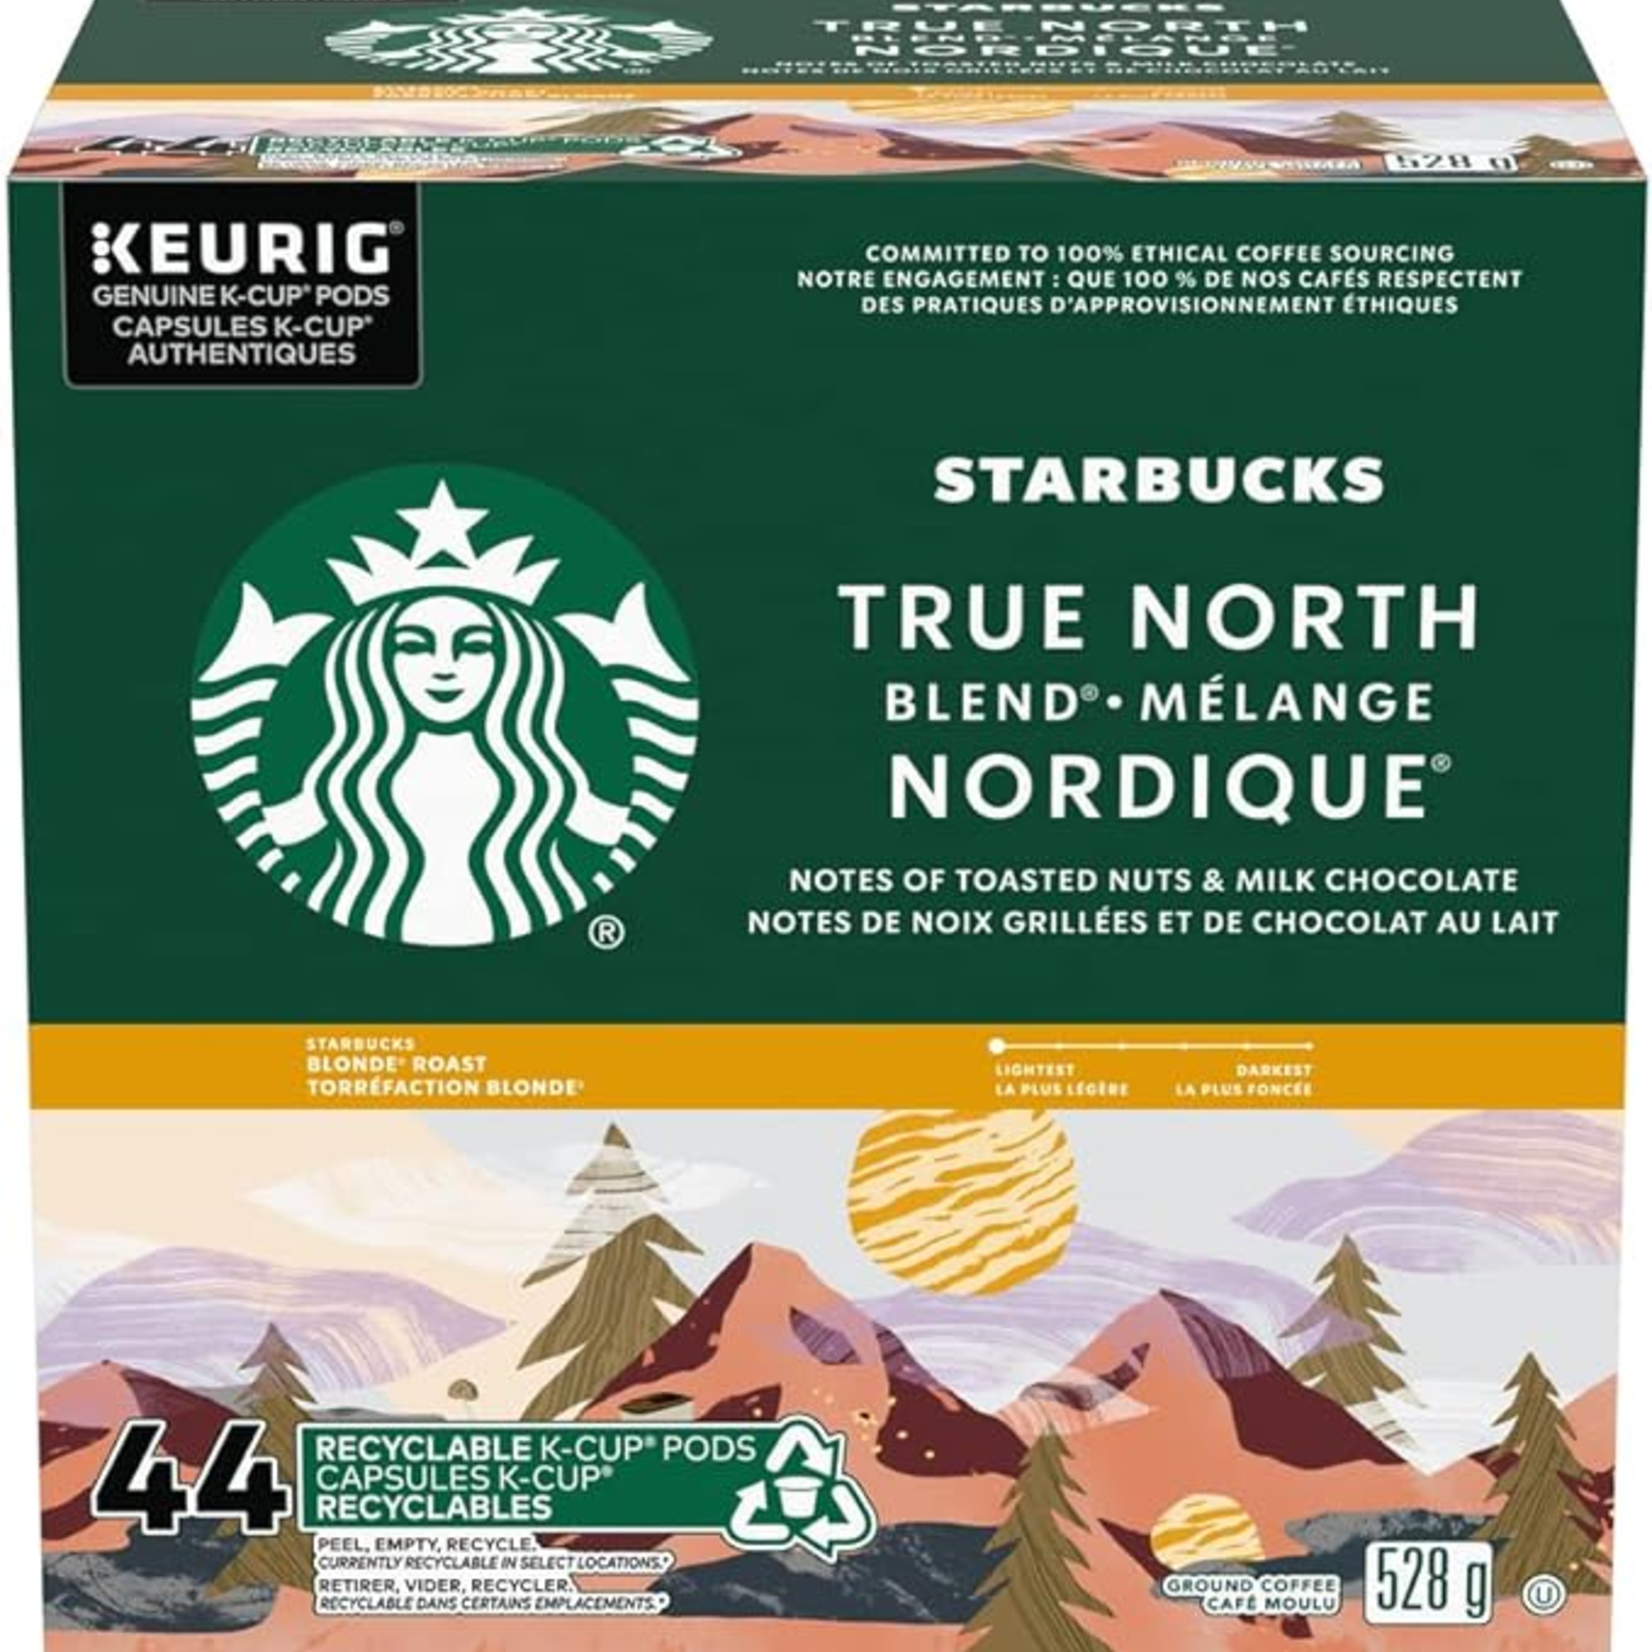 Starbucks True North Blend Blonde Roast Ground Coffee K-Cup Pods 44 ct Box